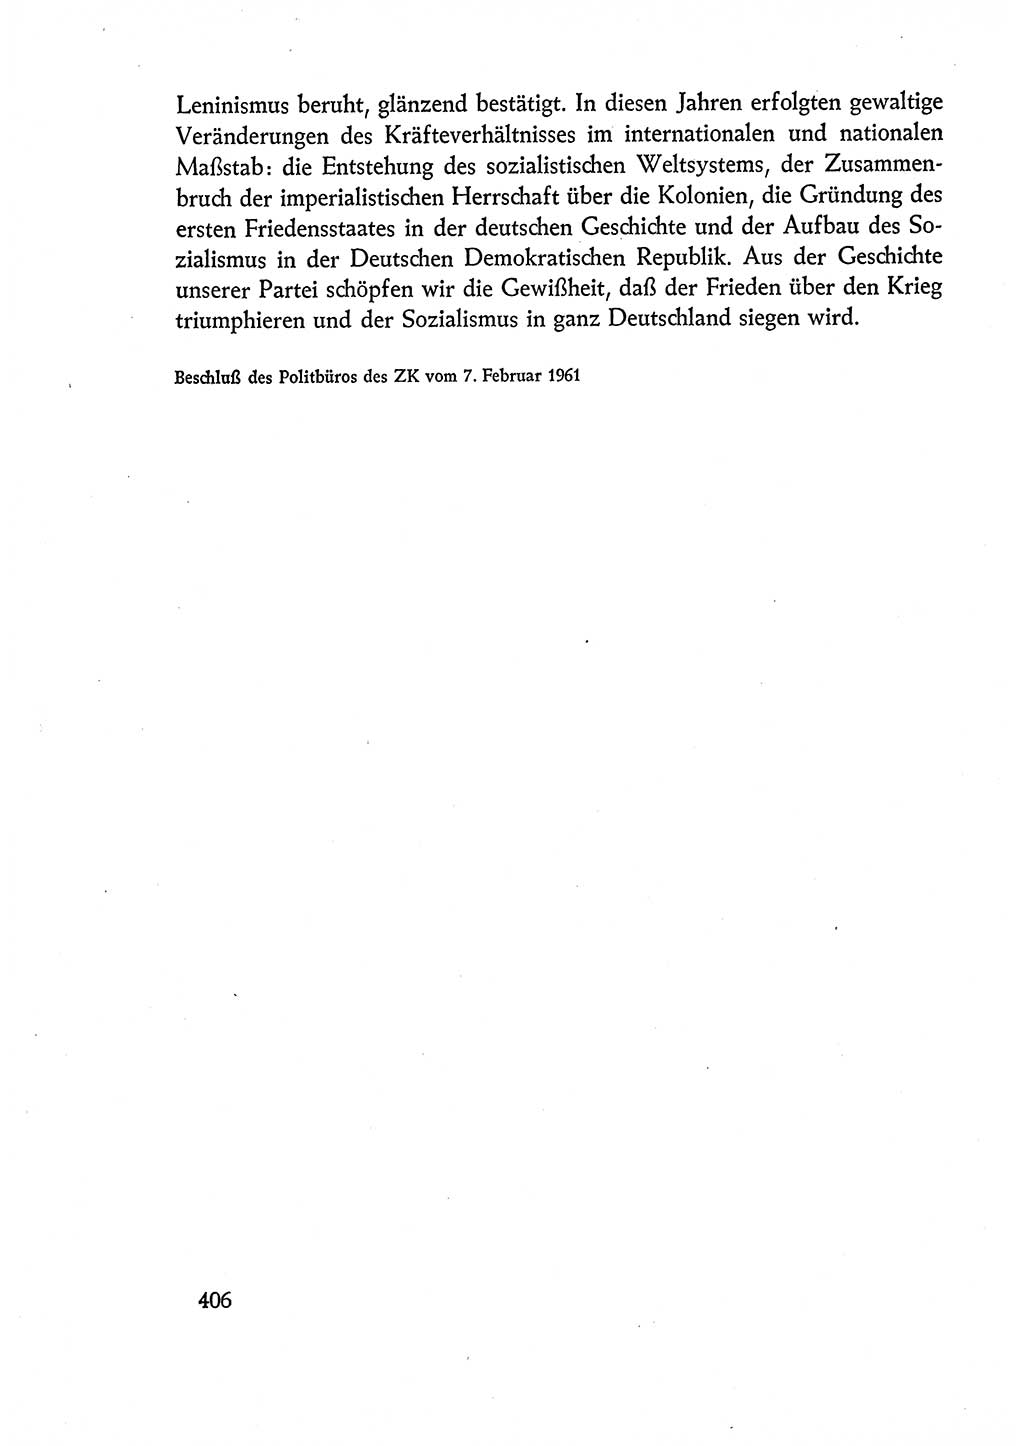 Dokumente der Sozialistischen Einheitspartei Deutschlands (SED) [Deutsche Demokratische Republik (DDR)] 1960-1961, Seite 406 (Dok. SED DDR 1960-1961, S. 406)